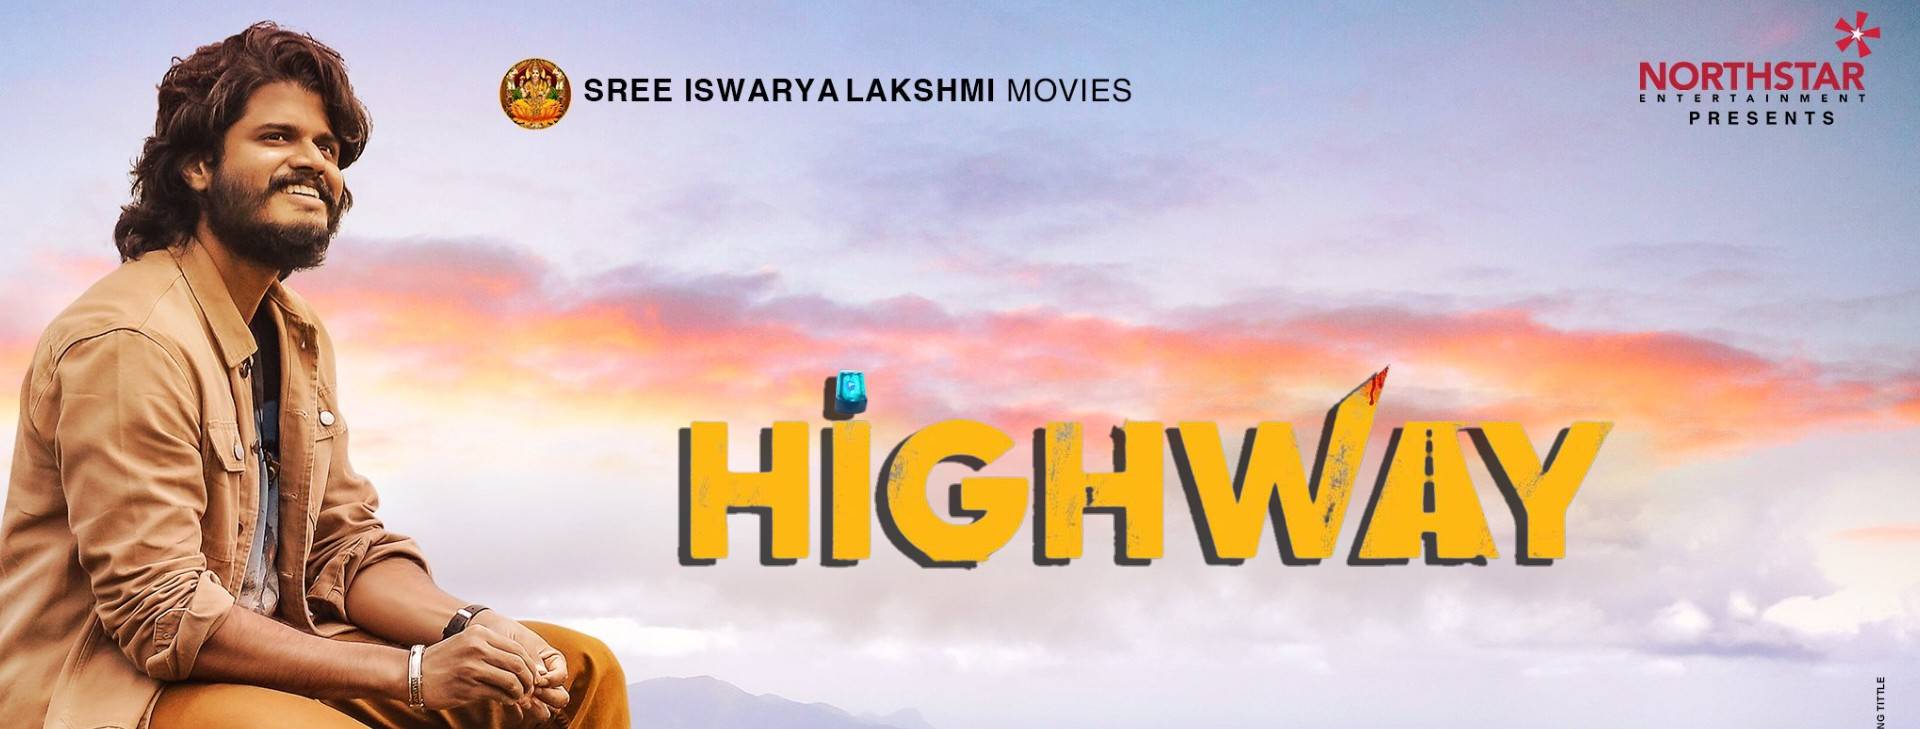 highway telugu movie review in telugu